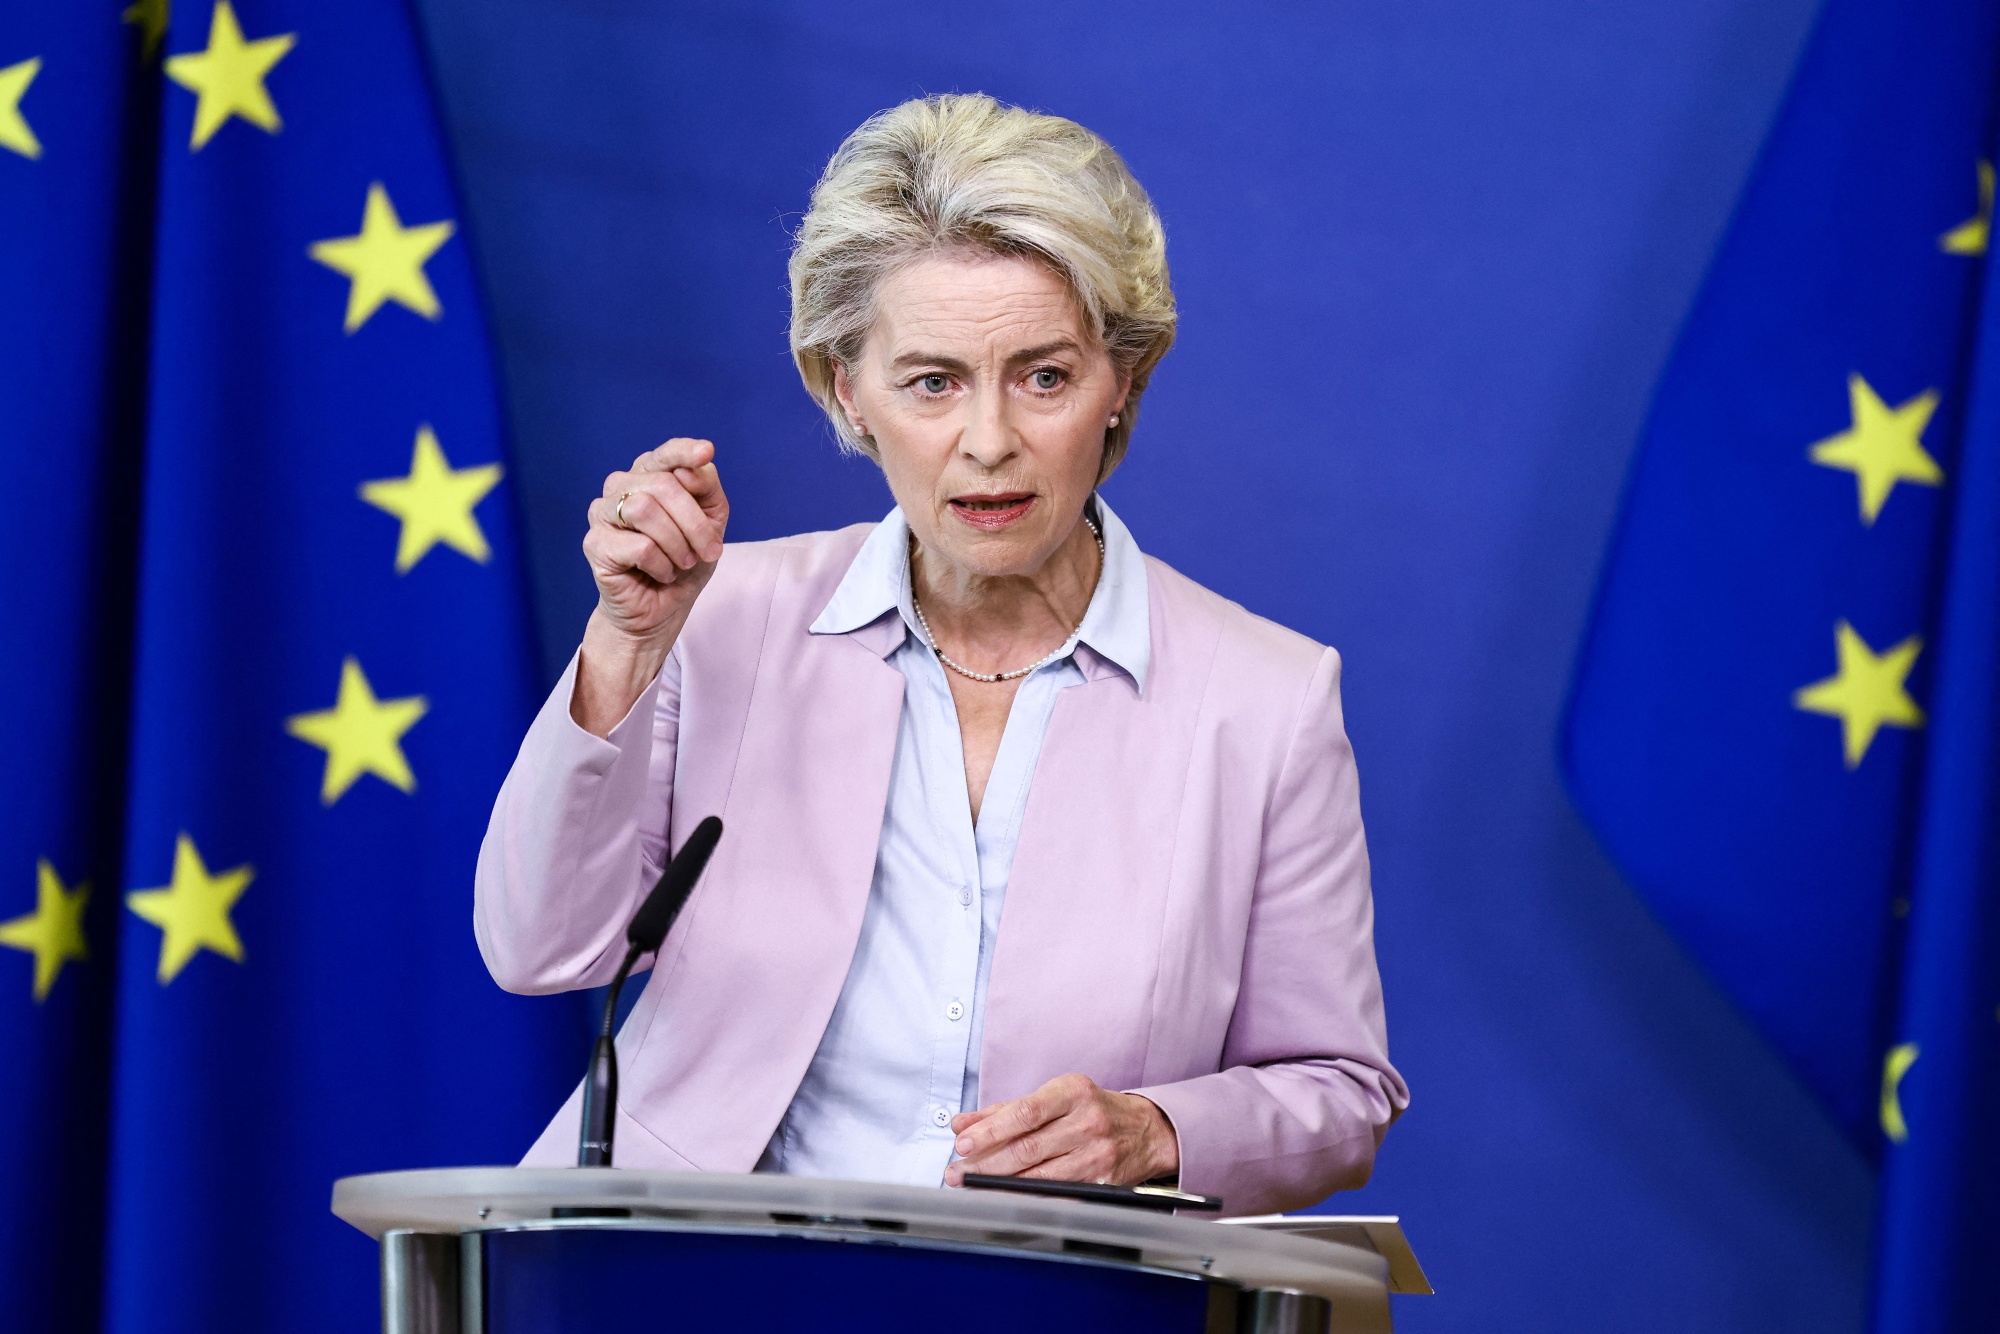 Ursula von der Leyen speaking at EU headquarters in Brussels, on Sept. 7.